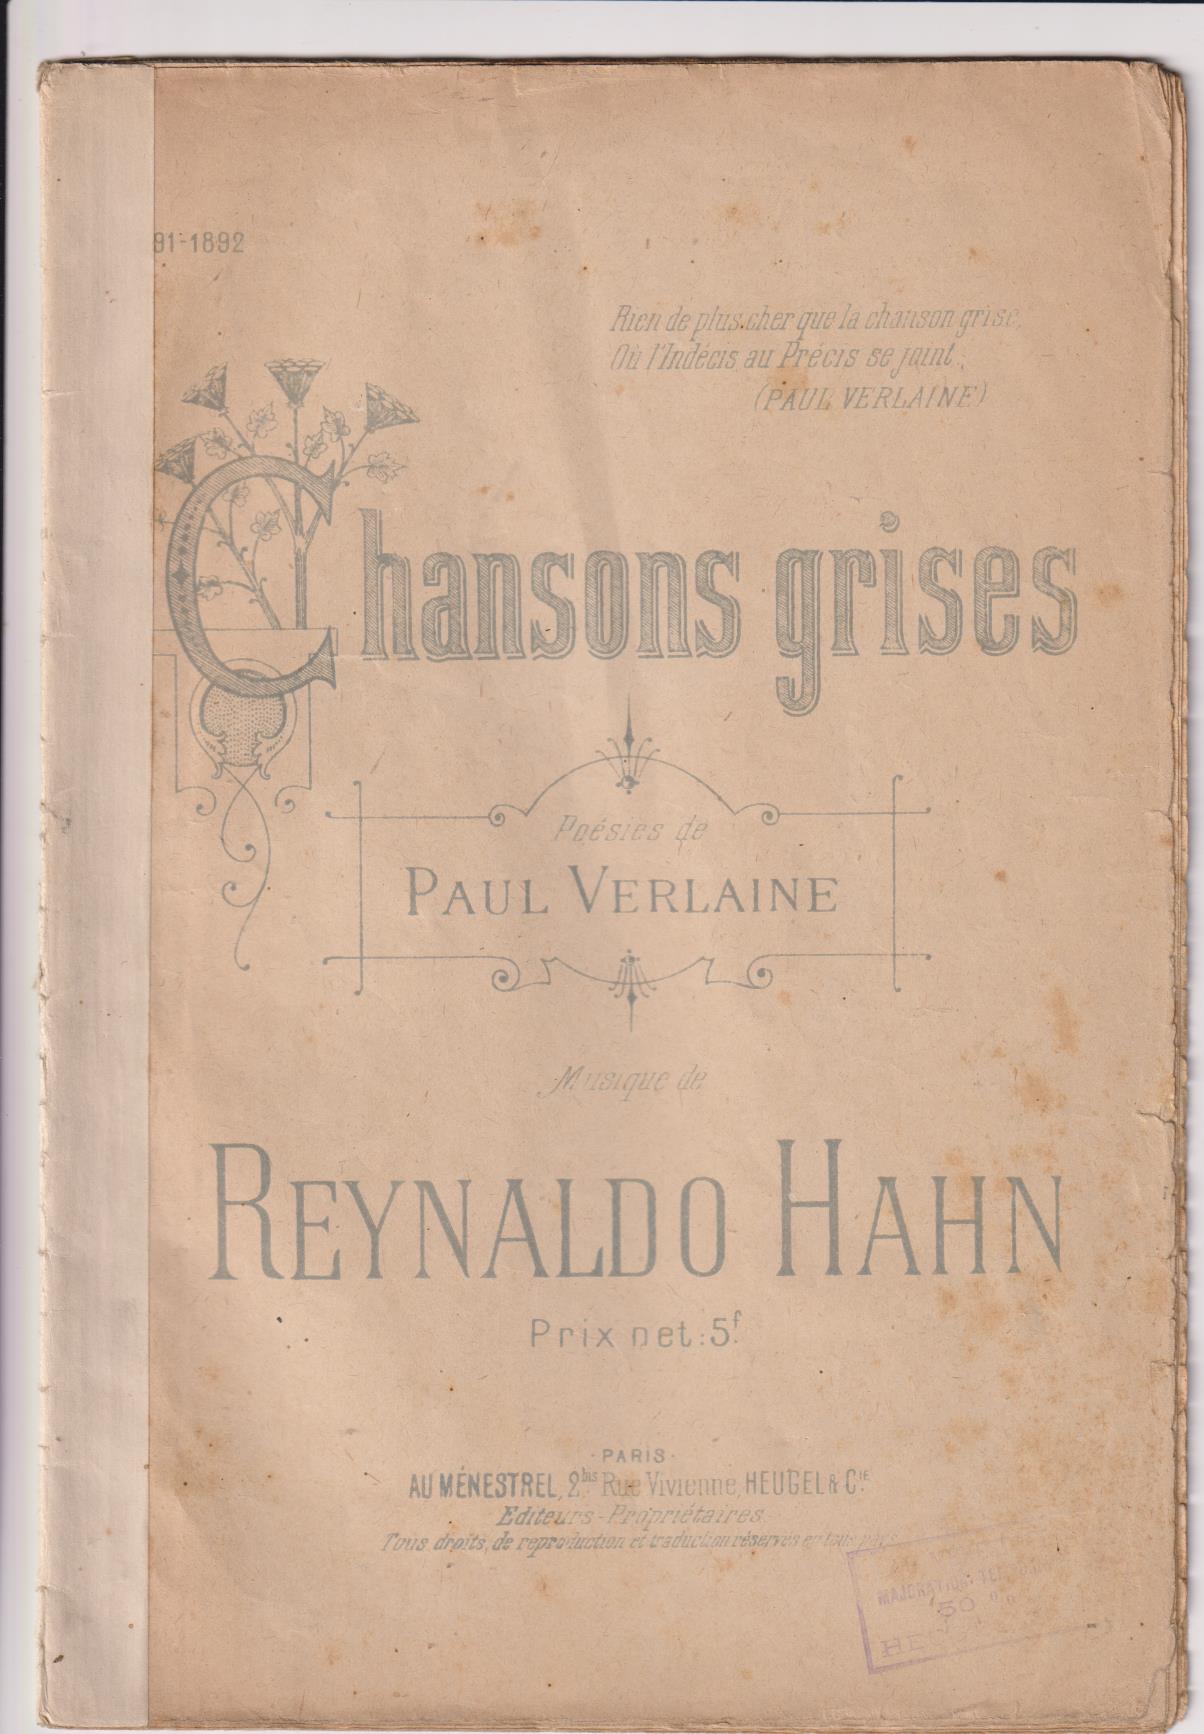 Chansons Grises. Poesías de Paul Verlaine. Música de Reinaldo Hahn. Paris 1892